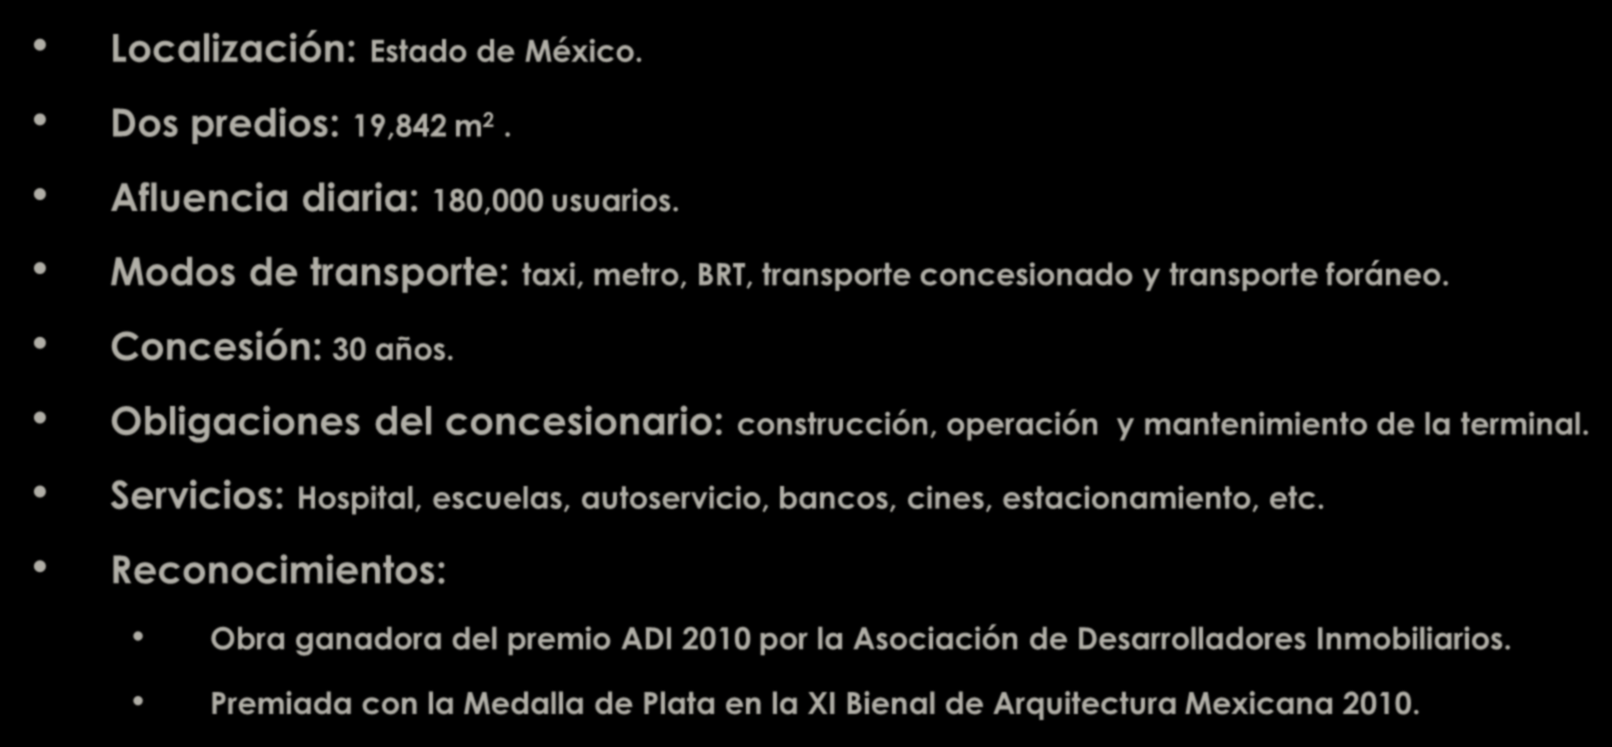 MEXIPUERTO Cd. Azteca Localización: Estado de México. Dos predios: 19,842 m 2. Afluencia diaria: 180,000 usuarios. Modos de transporte: taxi, metro, BRT, transporte concesionado y transporte foráneo.